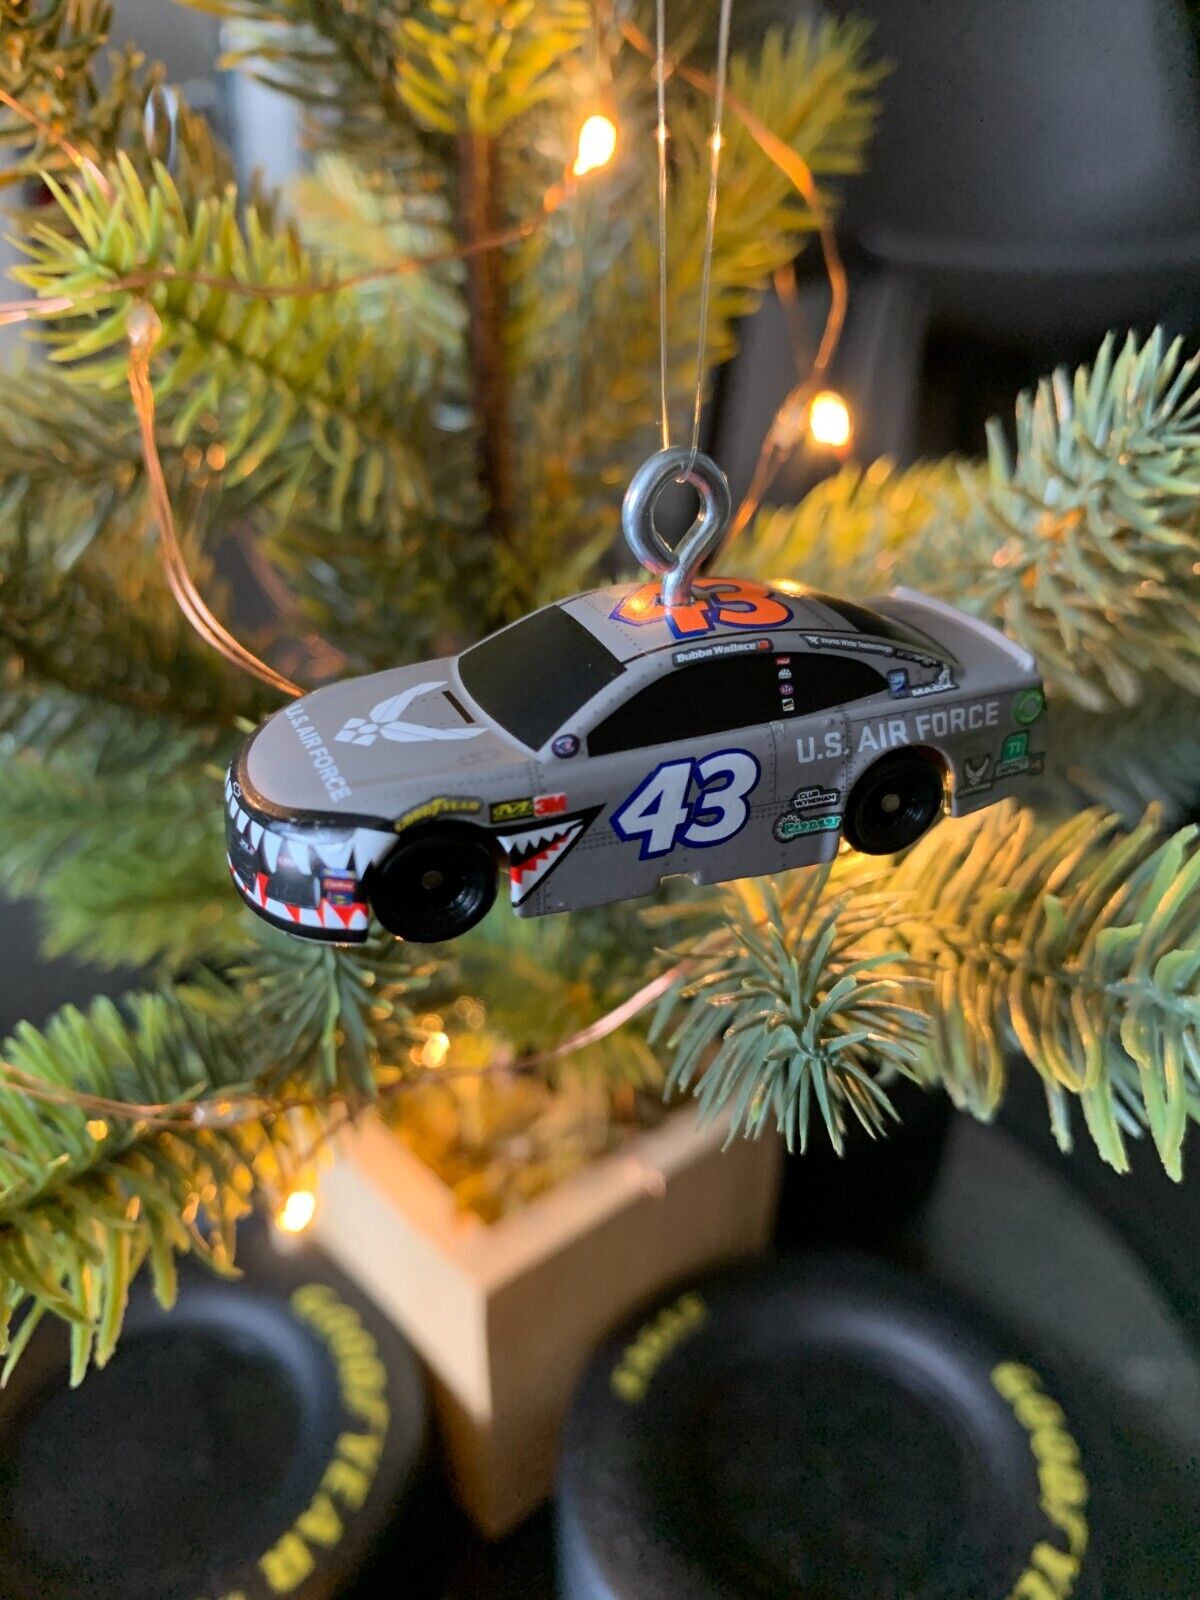 U.S. Air Force Shark # 43 NASCAR Christmas Ornament 1:87 Scale